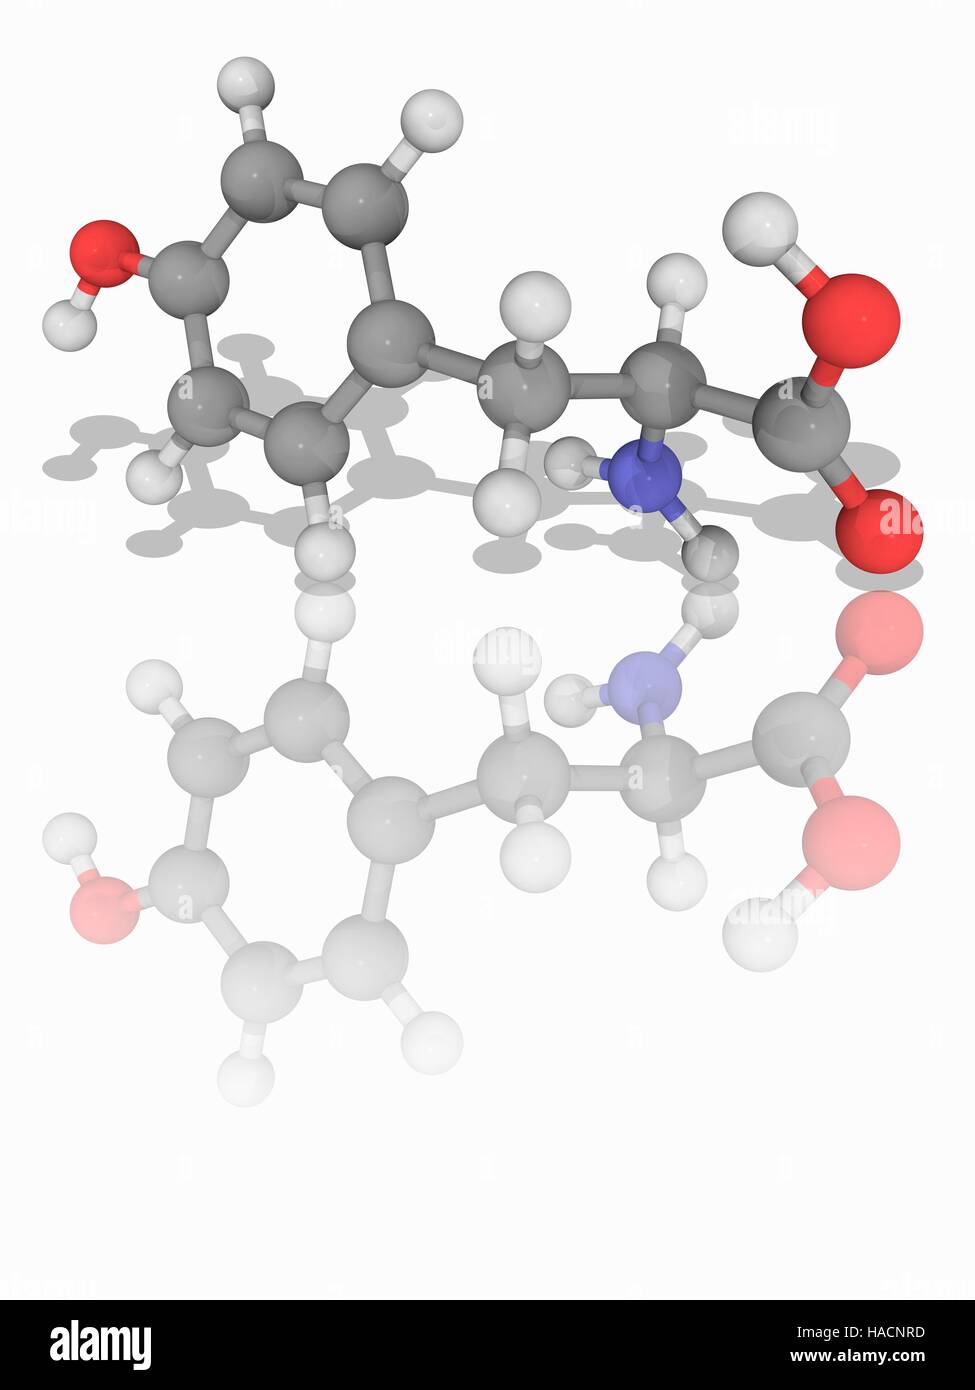 Tirosina. Il modello molecolare di amminoacido non essenziale di tirosina (C9.H11.N.O3), uno dei venti amminoacidi utilizzati per sintetizzare le proteine (proteinogenic). Gli atomi sono rappresentati da sfere e sono codificati a colori: carbonio (grigio), Idrogeno (bianco), Azoto (blu) e ossigeno (rosso). Illustrazione. Foto Stock